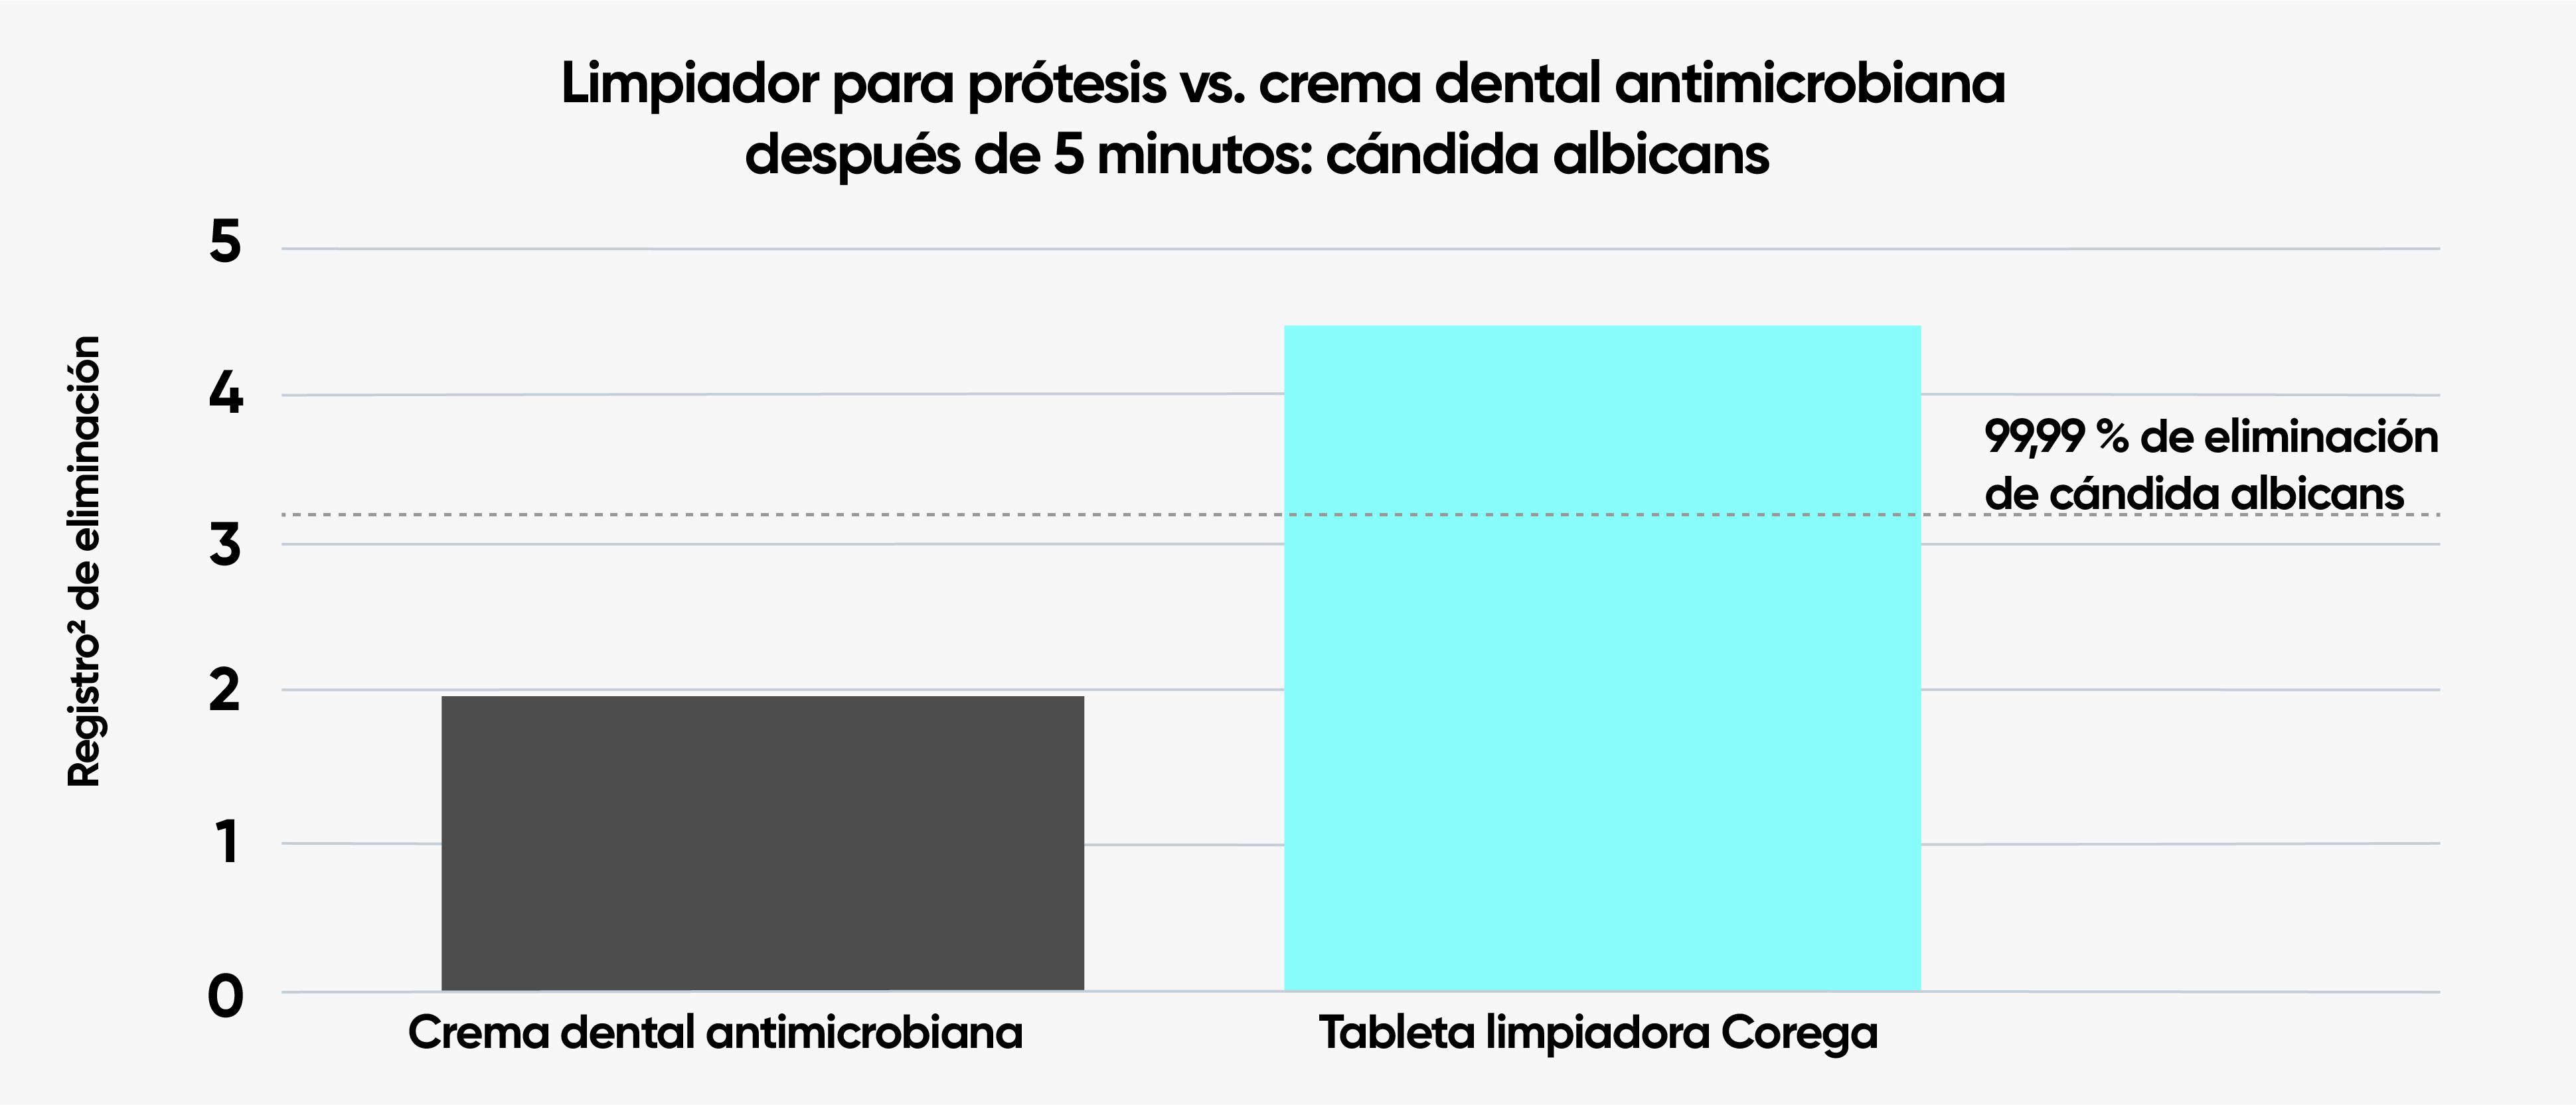 Cantidad de Cándida albicans eliminada in vitro 5 minutos después del tratamiento limpiador de la prótesis dental vs. con crema de dientes antimicrobiana